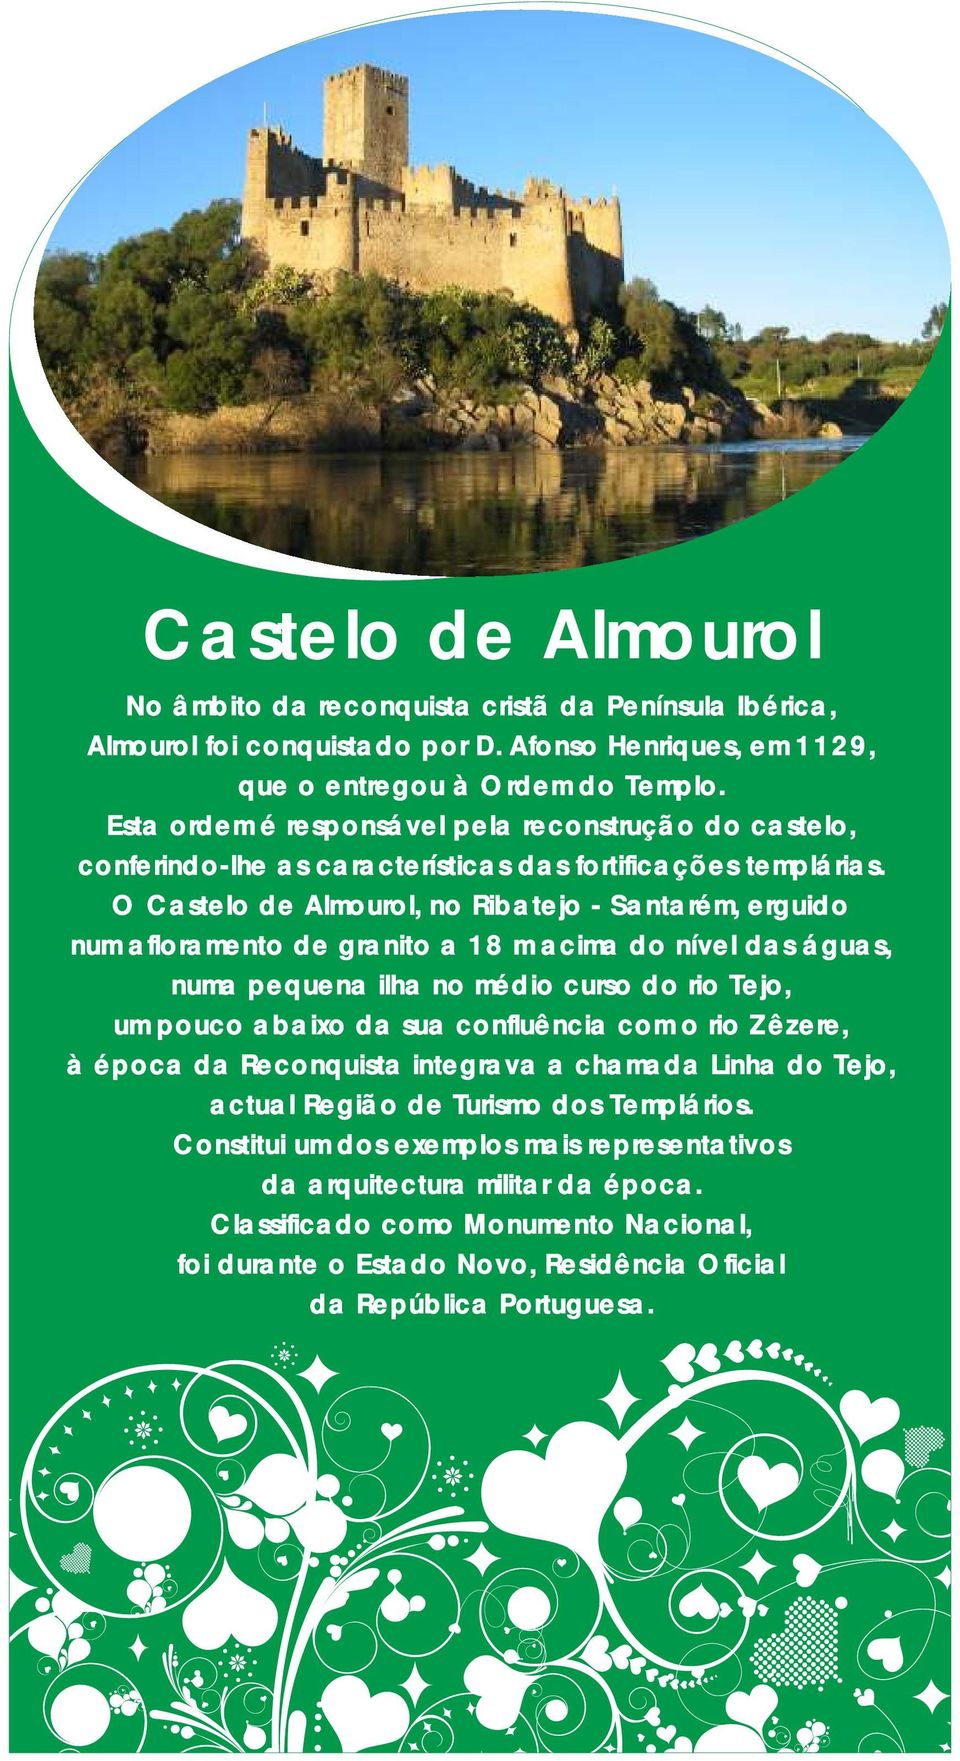 O Castelo de Almourol, no Ribatejo - Santarém, erguido num afloramento de granito a 18 m acima do nível das águas, numa pequena ilha no médio curso do rio Tejo, um pouco abaixo da sua confluência